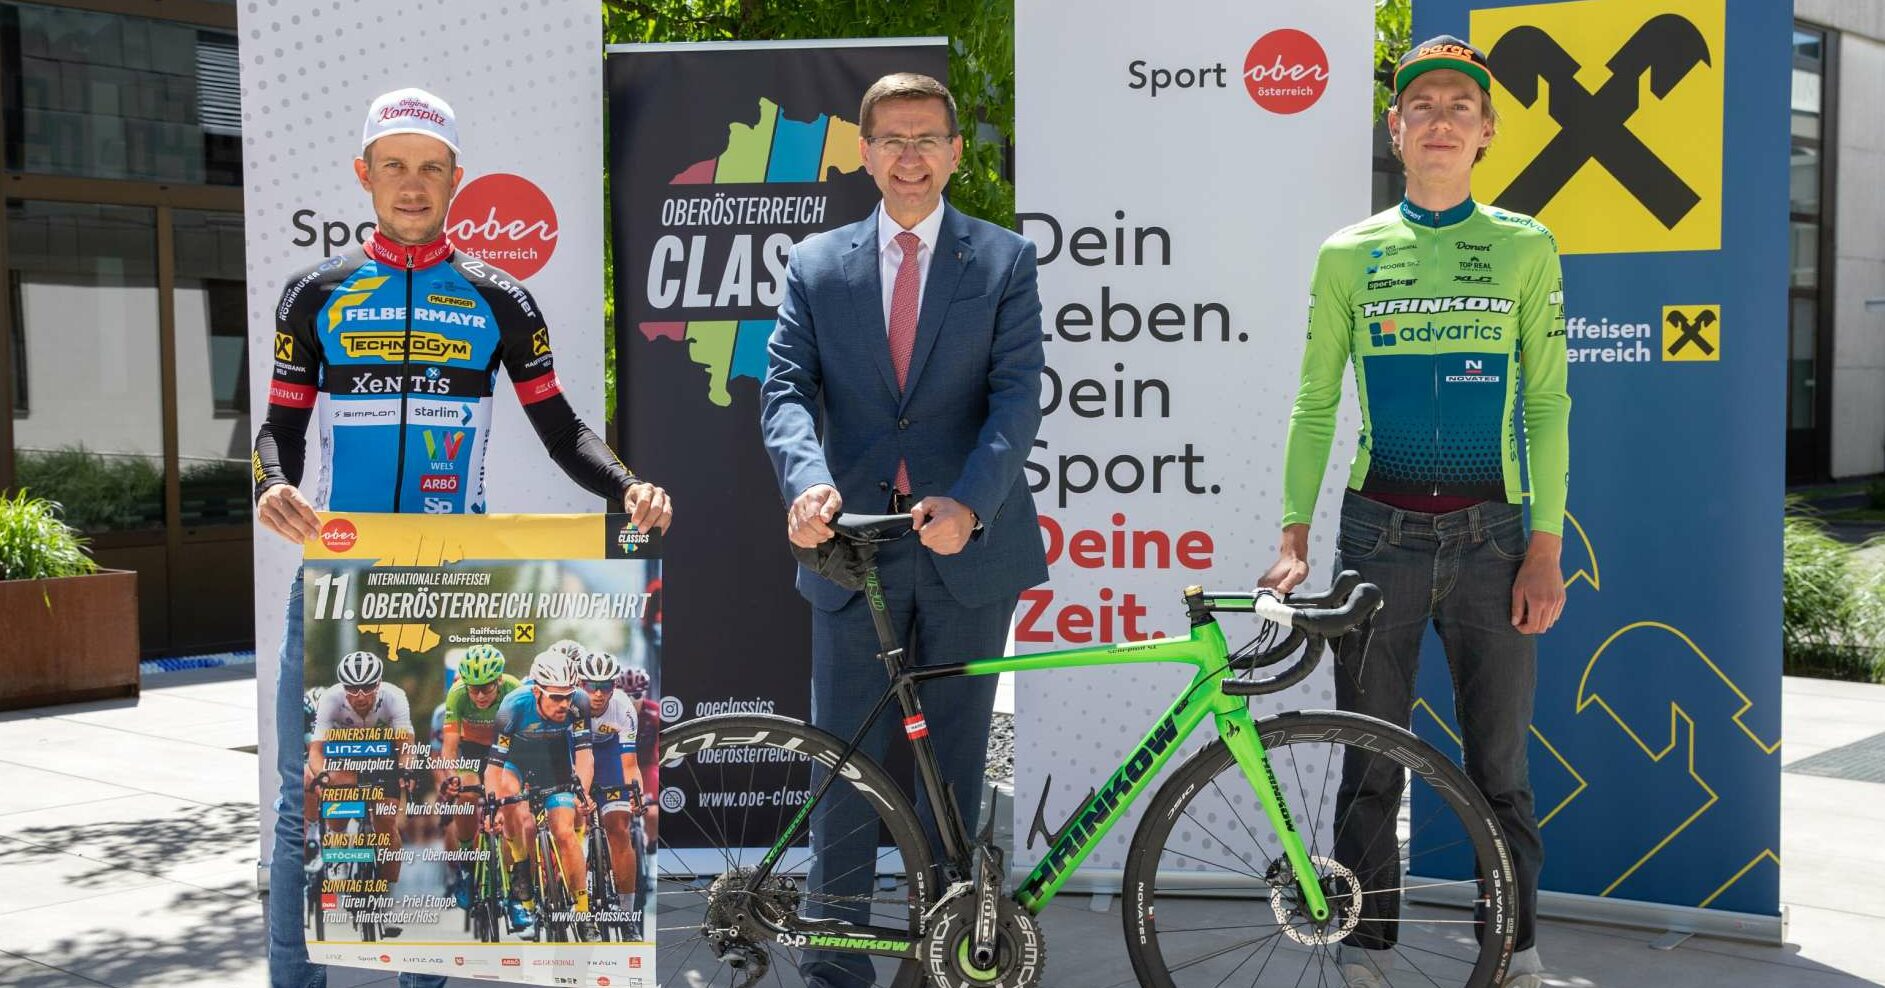 Sport-Landesrat Markus Achleitner (M.) freut sich mit den Rad-Assen Riccardo Zoidl (l.) und Daniel Eichinger auf die OÖ-Rundfahrt.